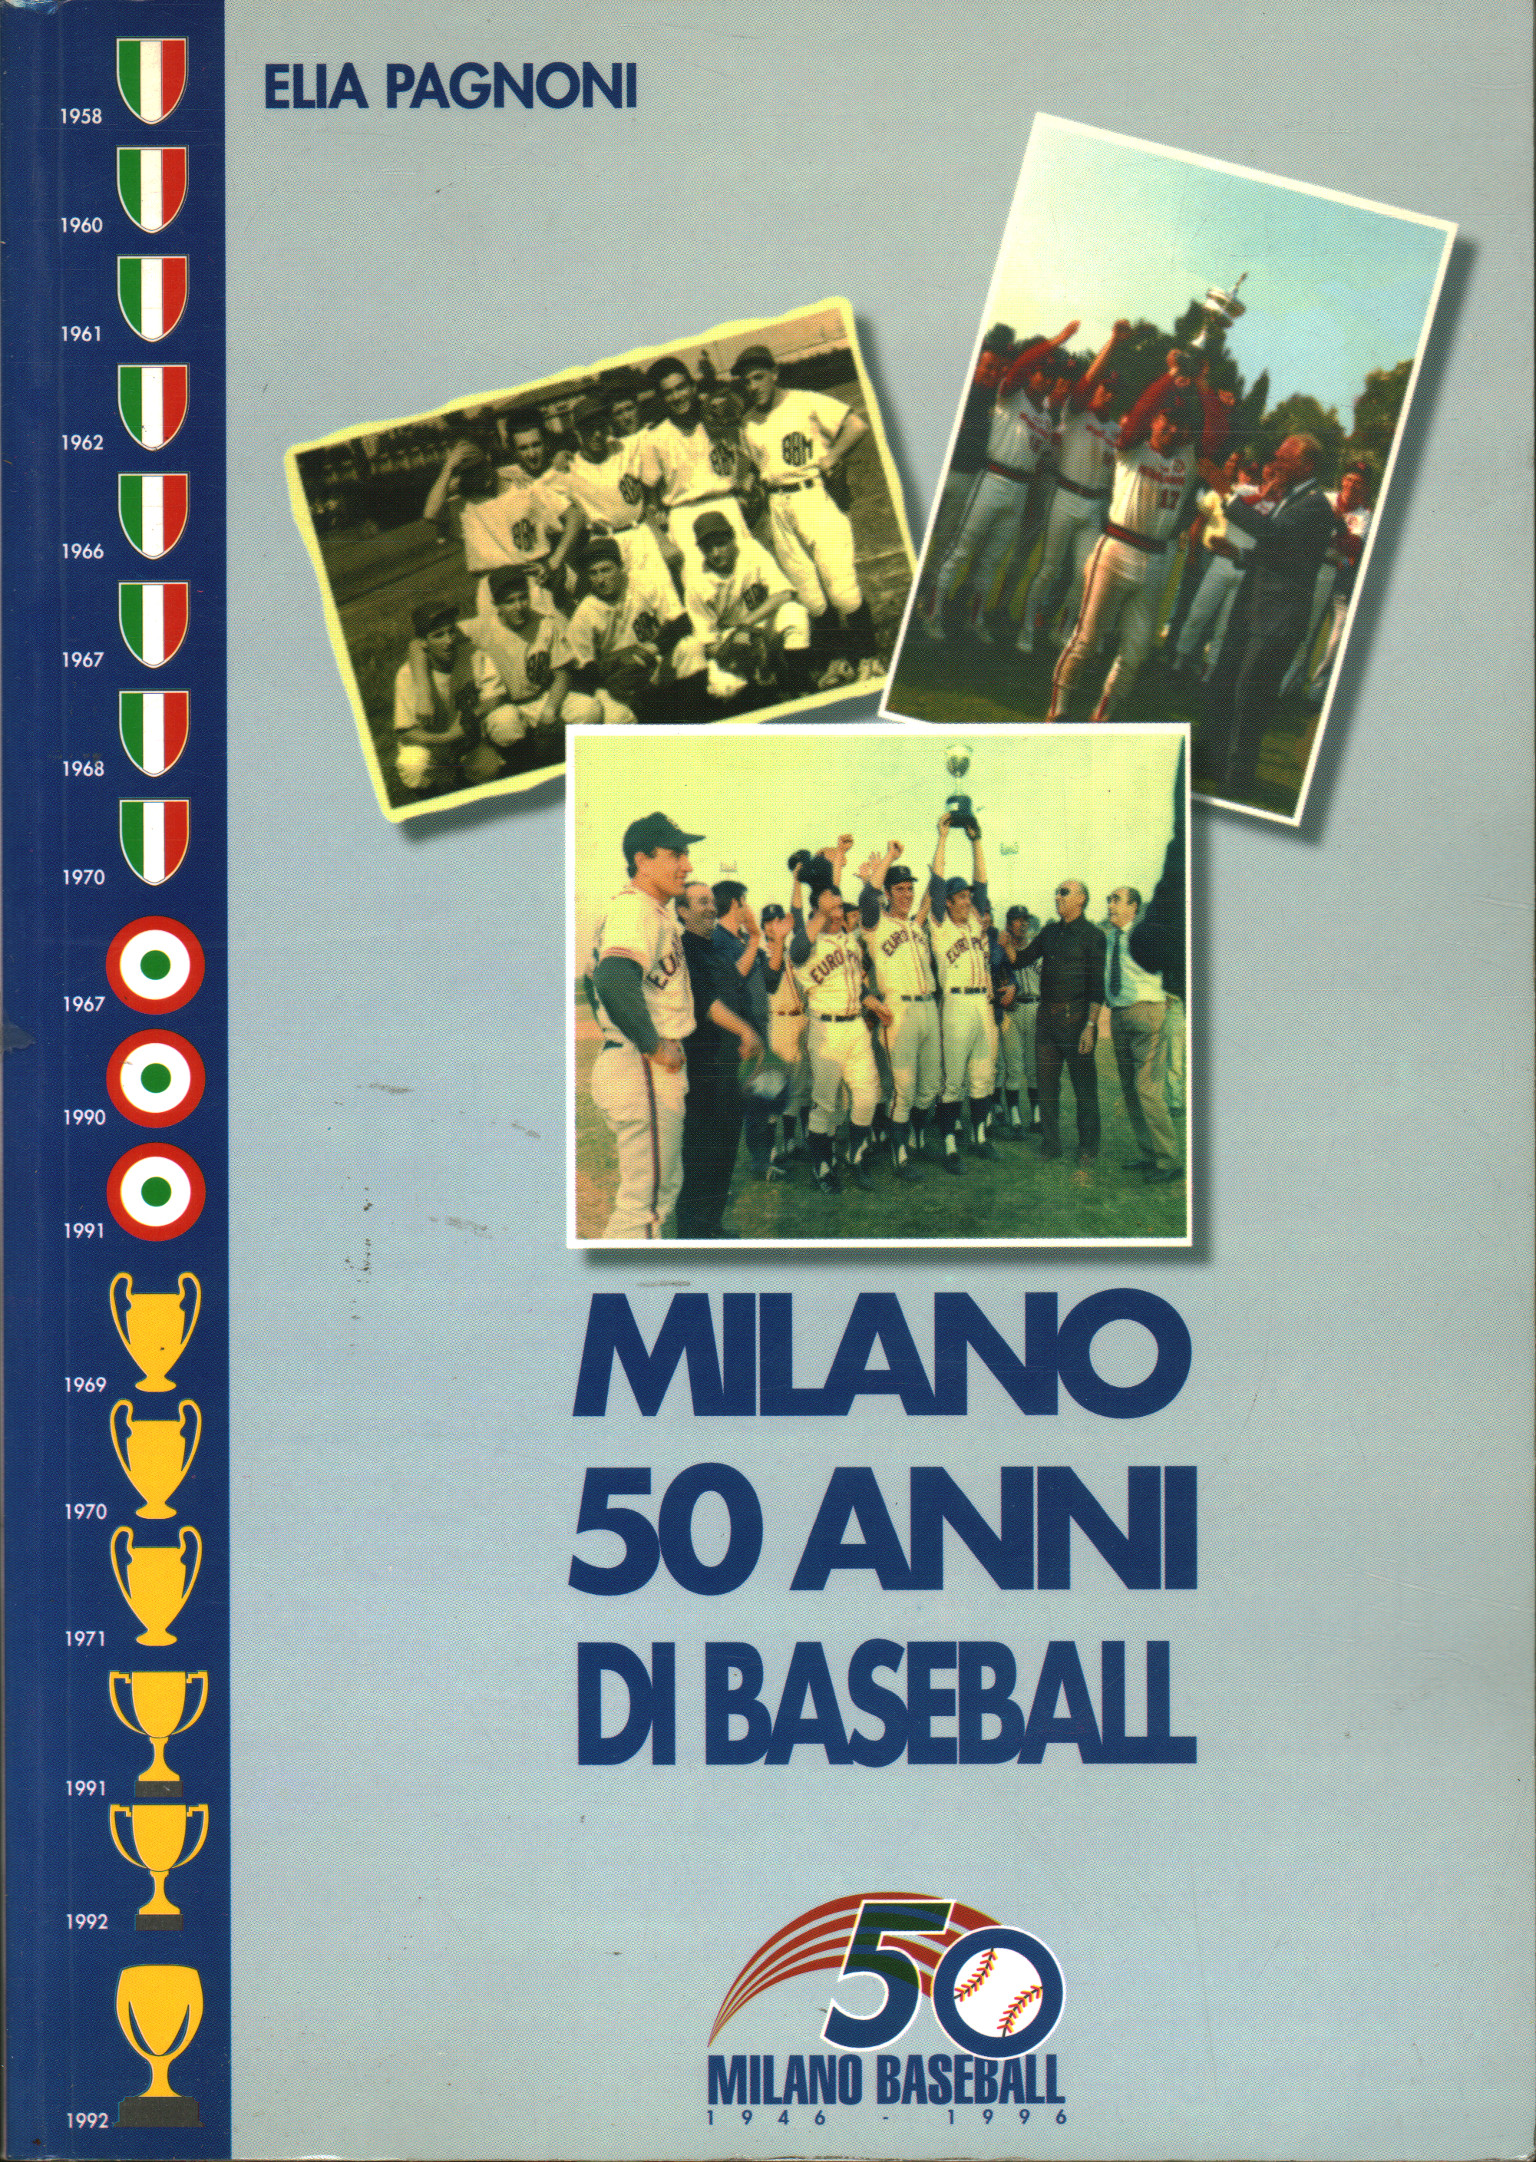 Milano 50 anni di baseball, Elia Pagnoni